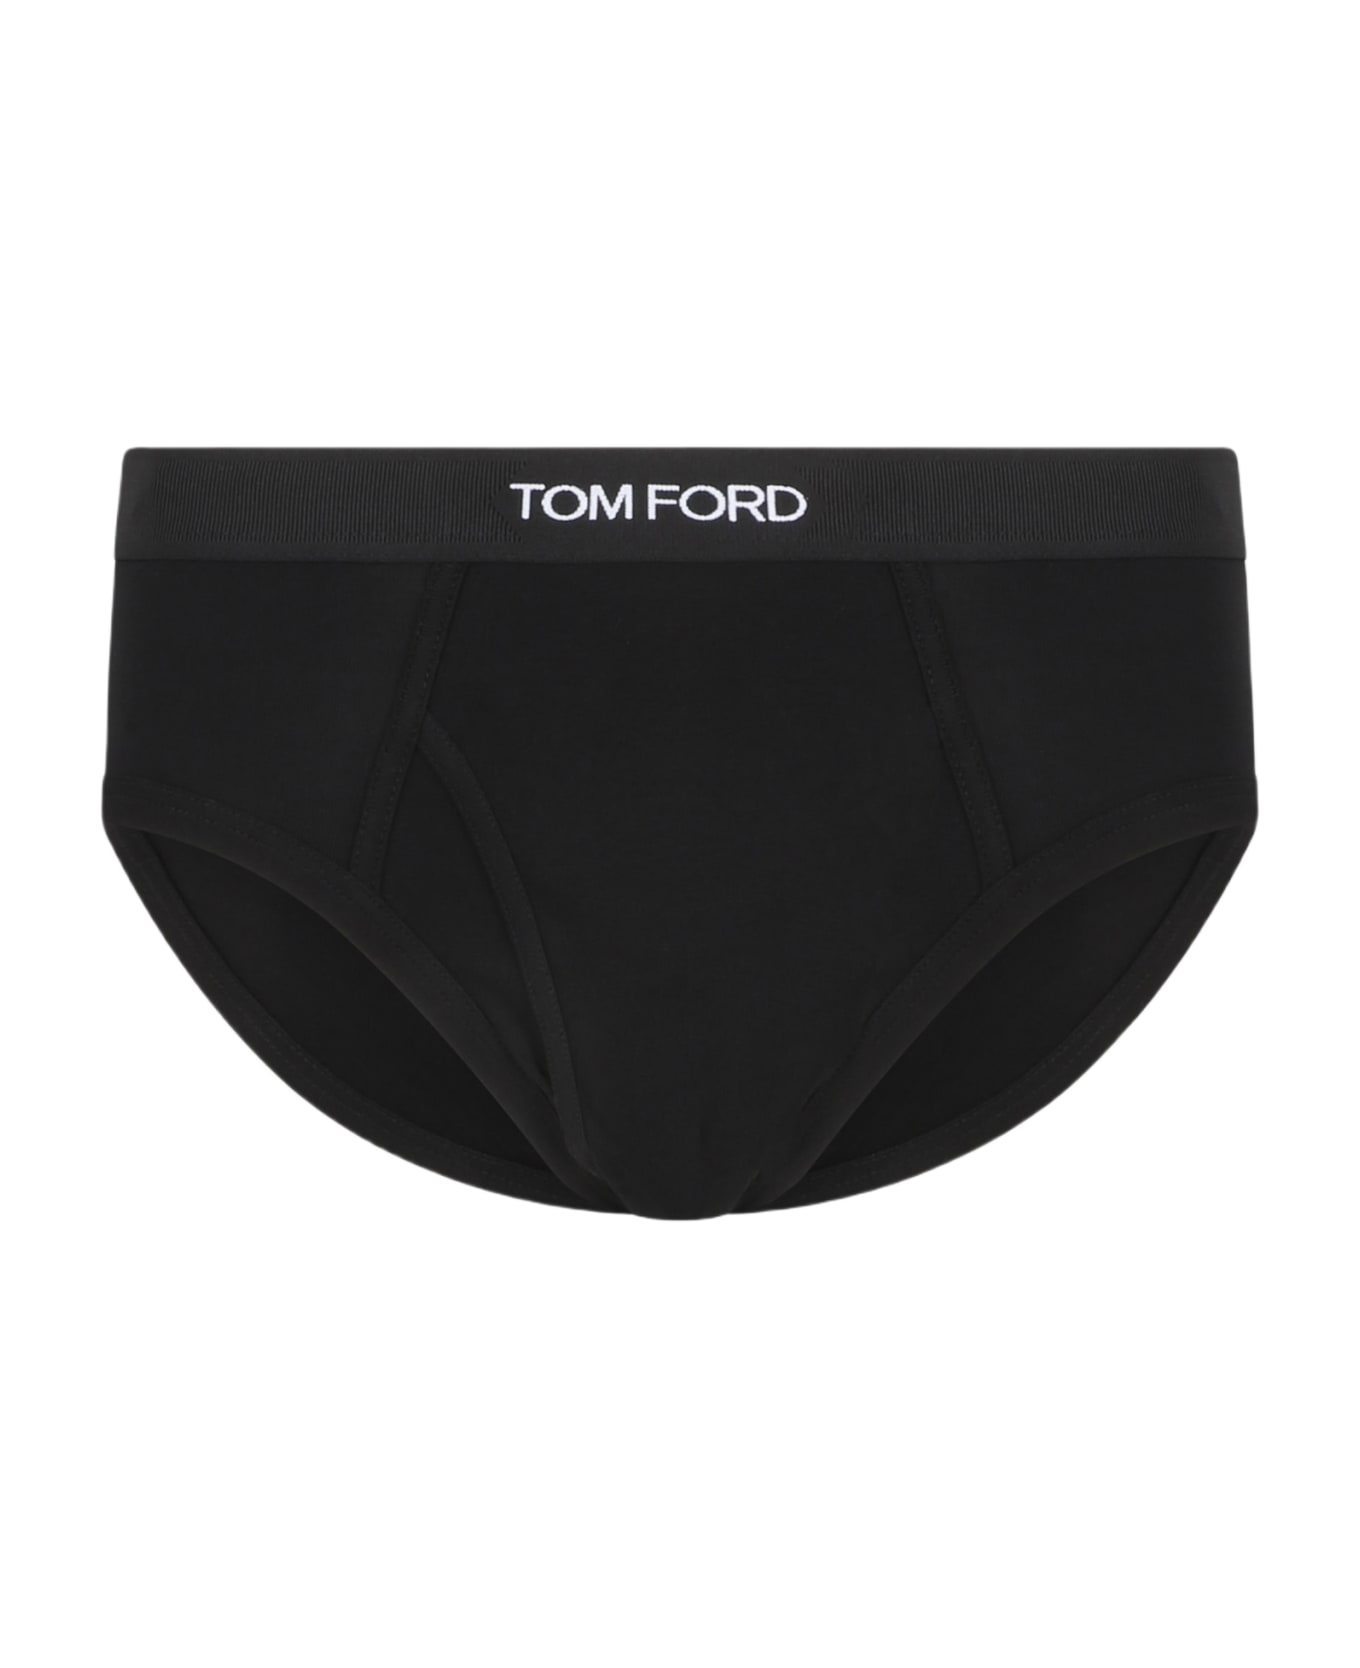 Tom Ford Intimo - Black ショーツ